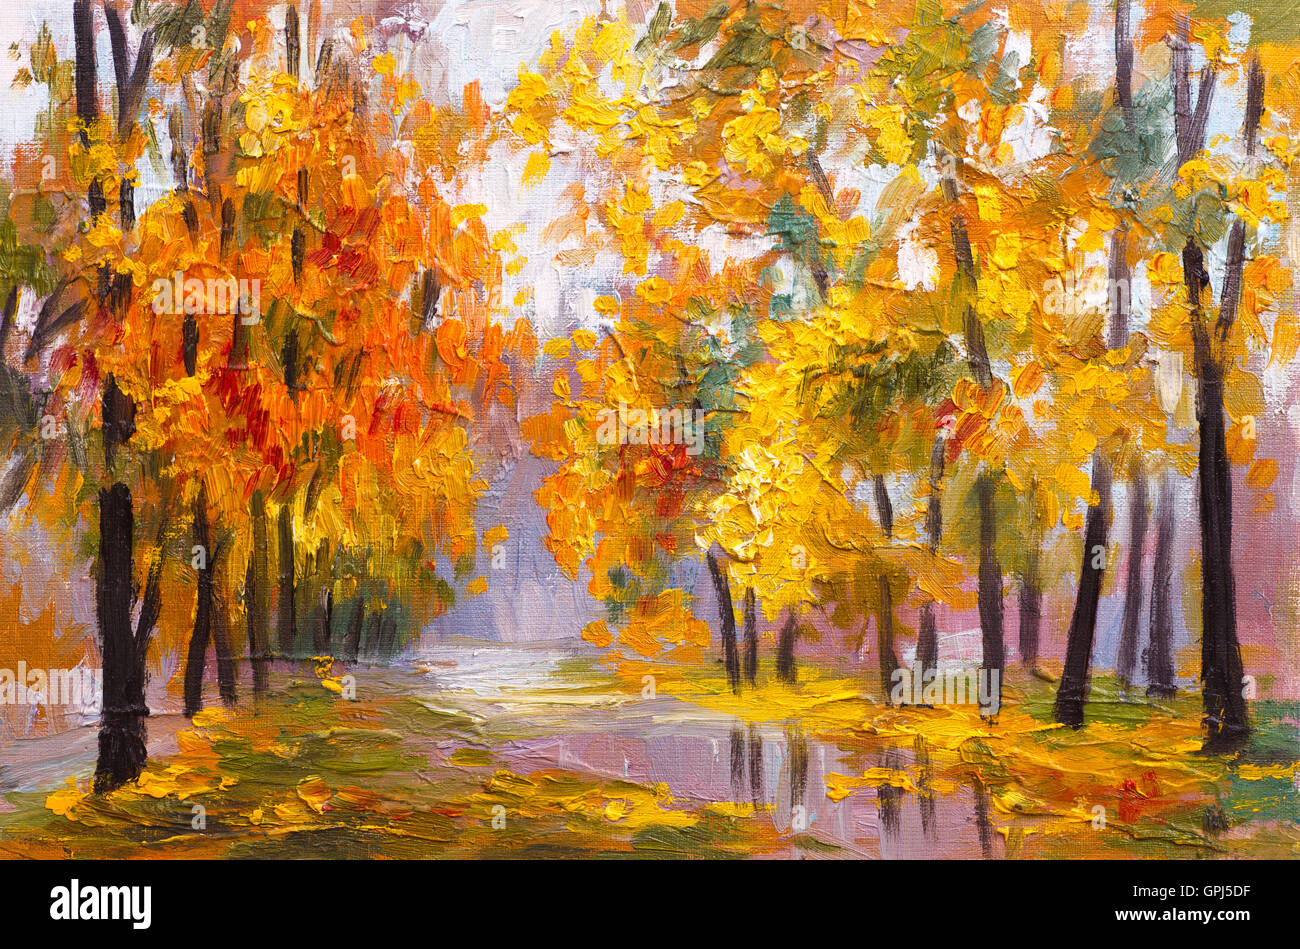 autumn landscape drawing